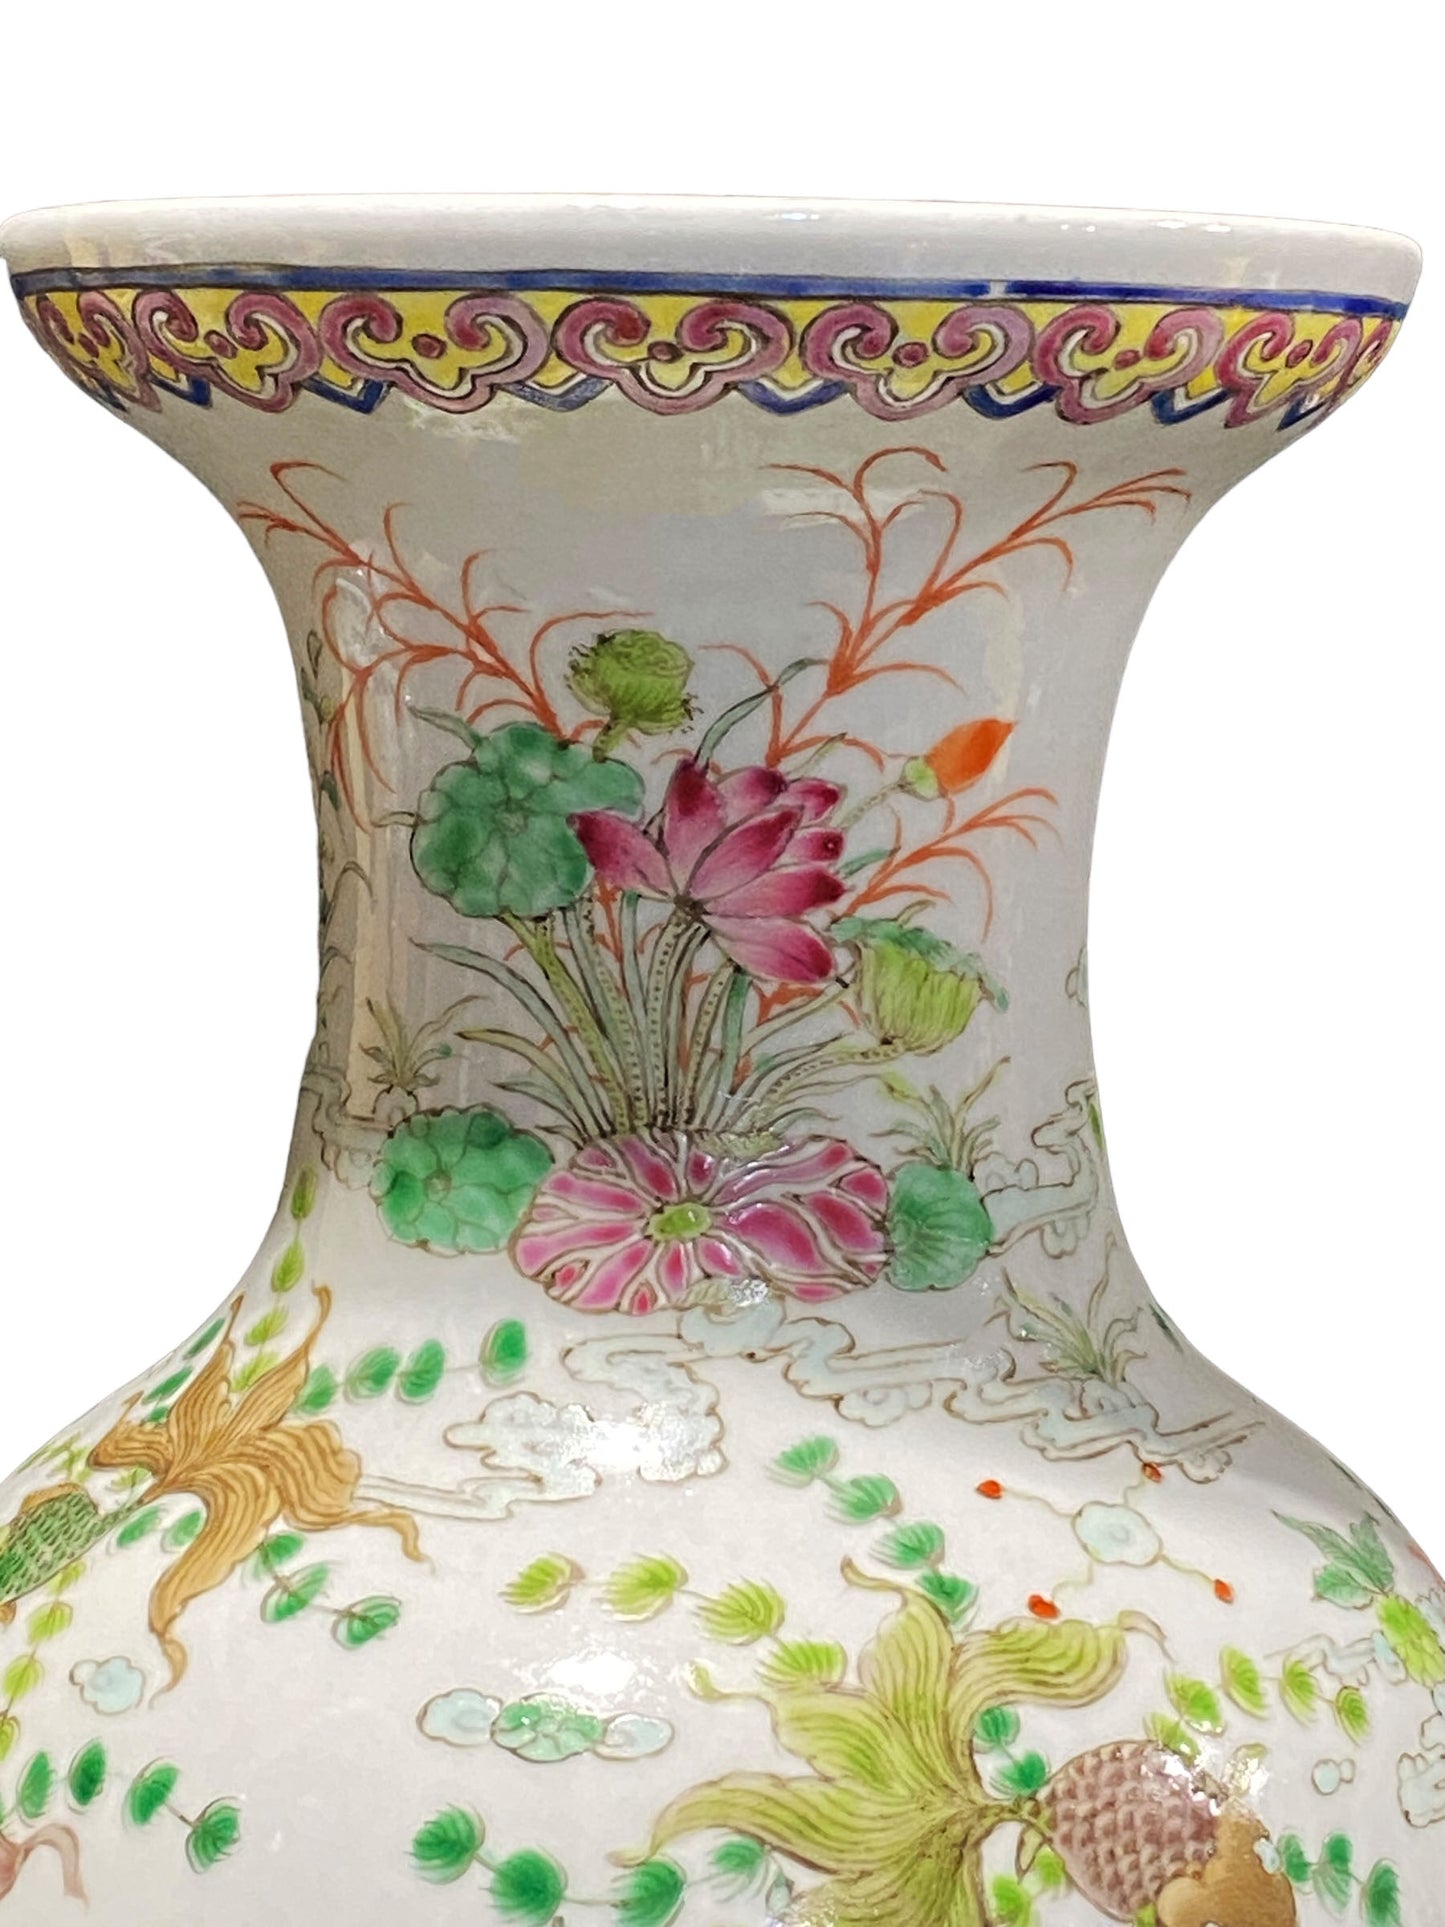 #3186 Chinoiserie Famille Rose Golden Fish Vase 16.5" H